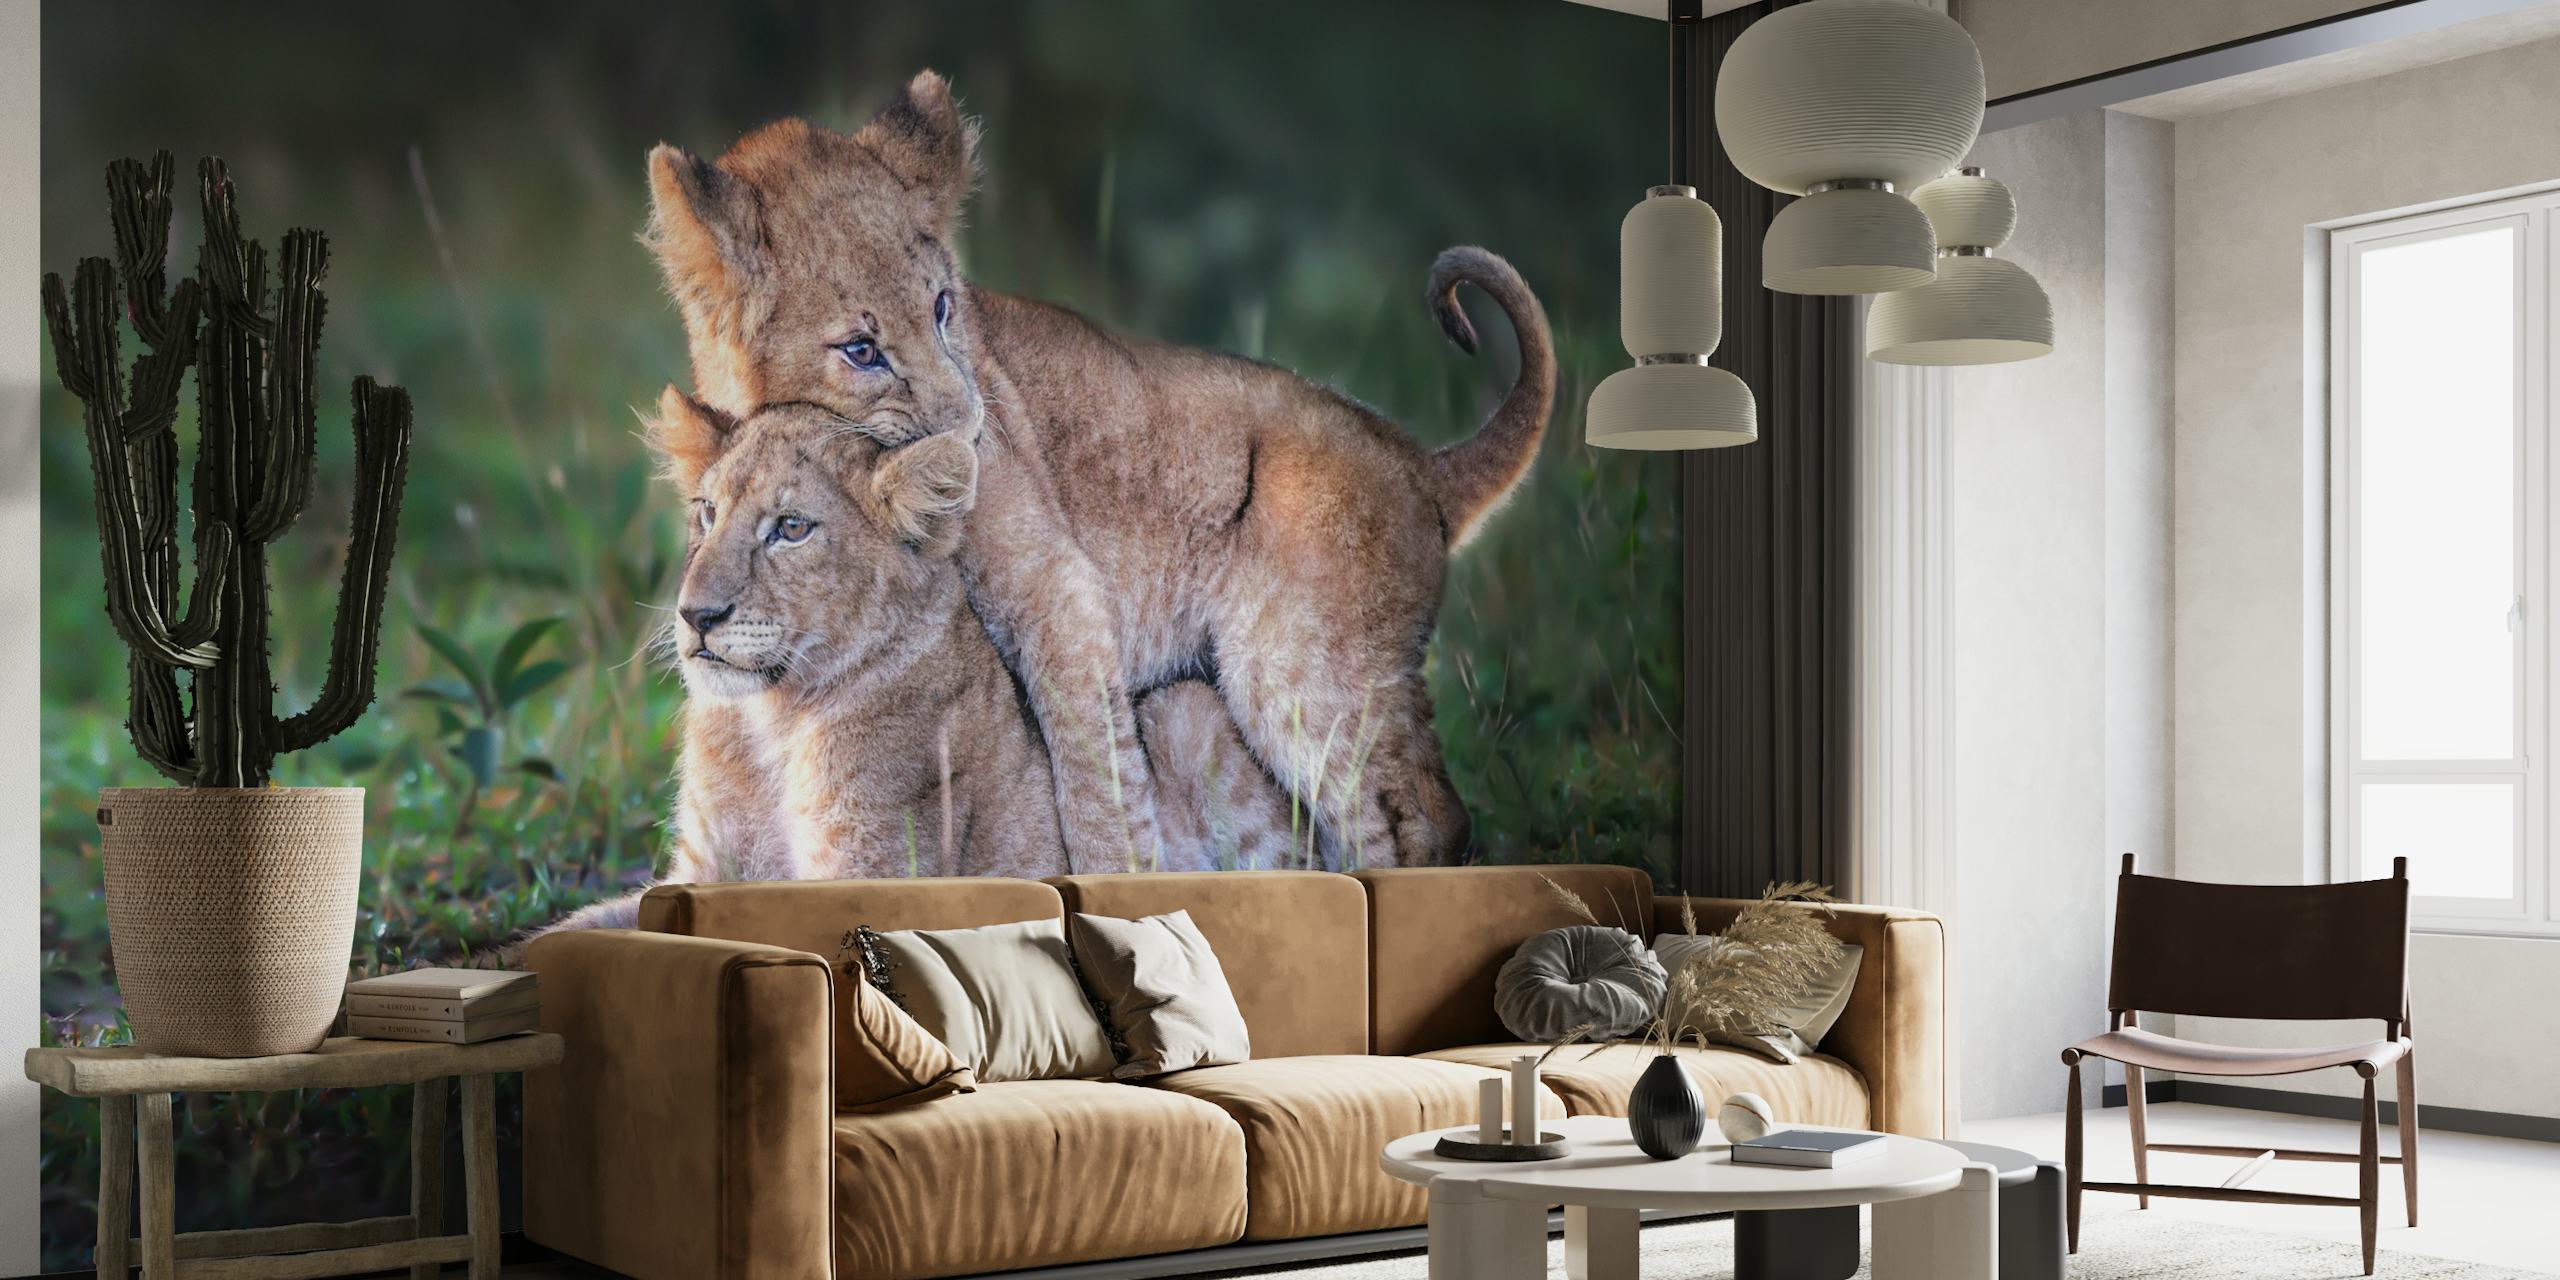 Playful lion cubs papiers peint